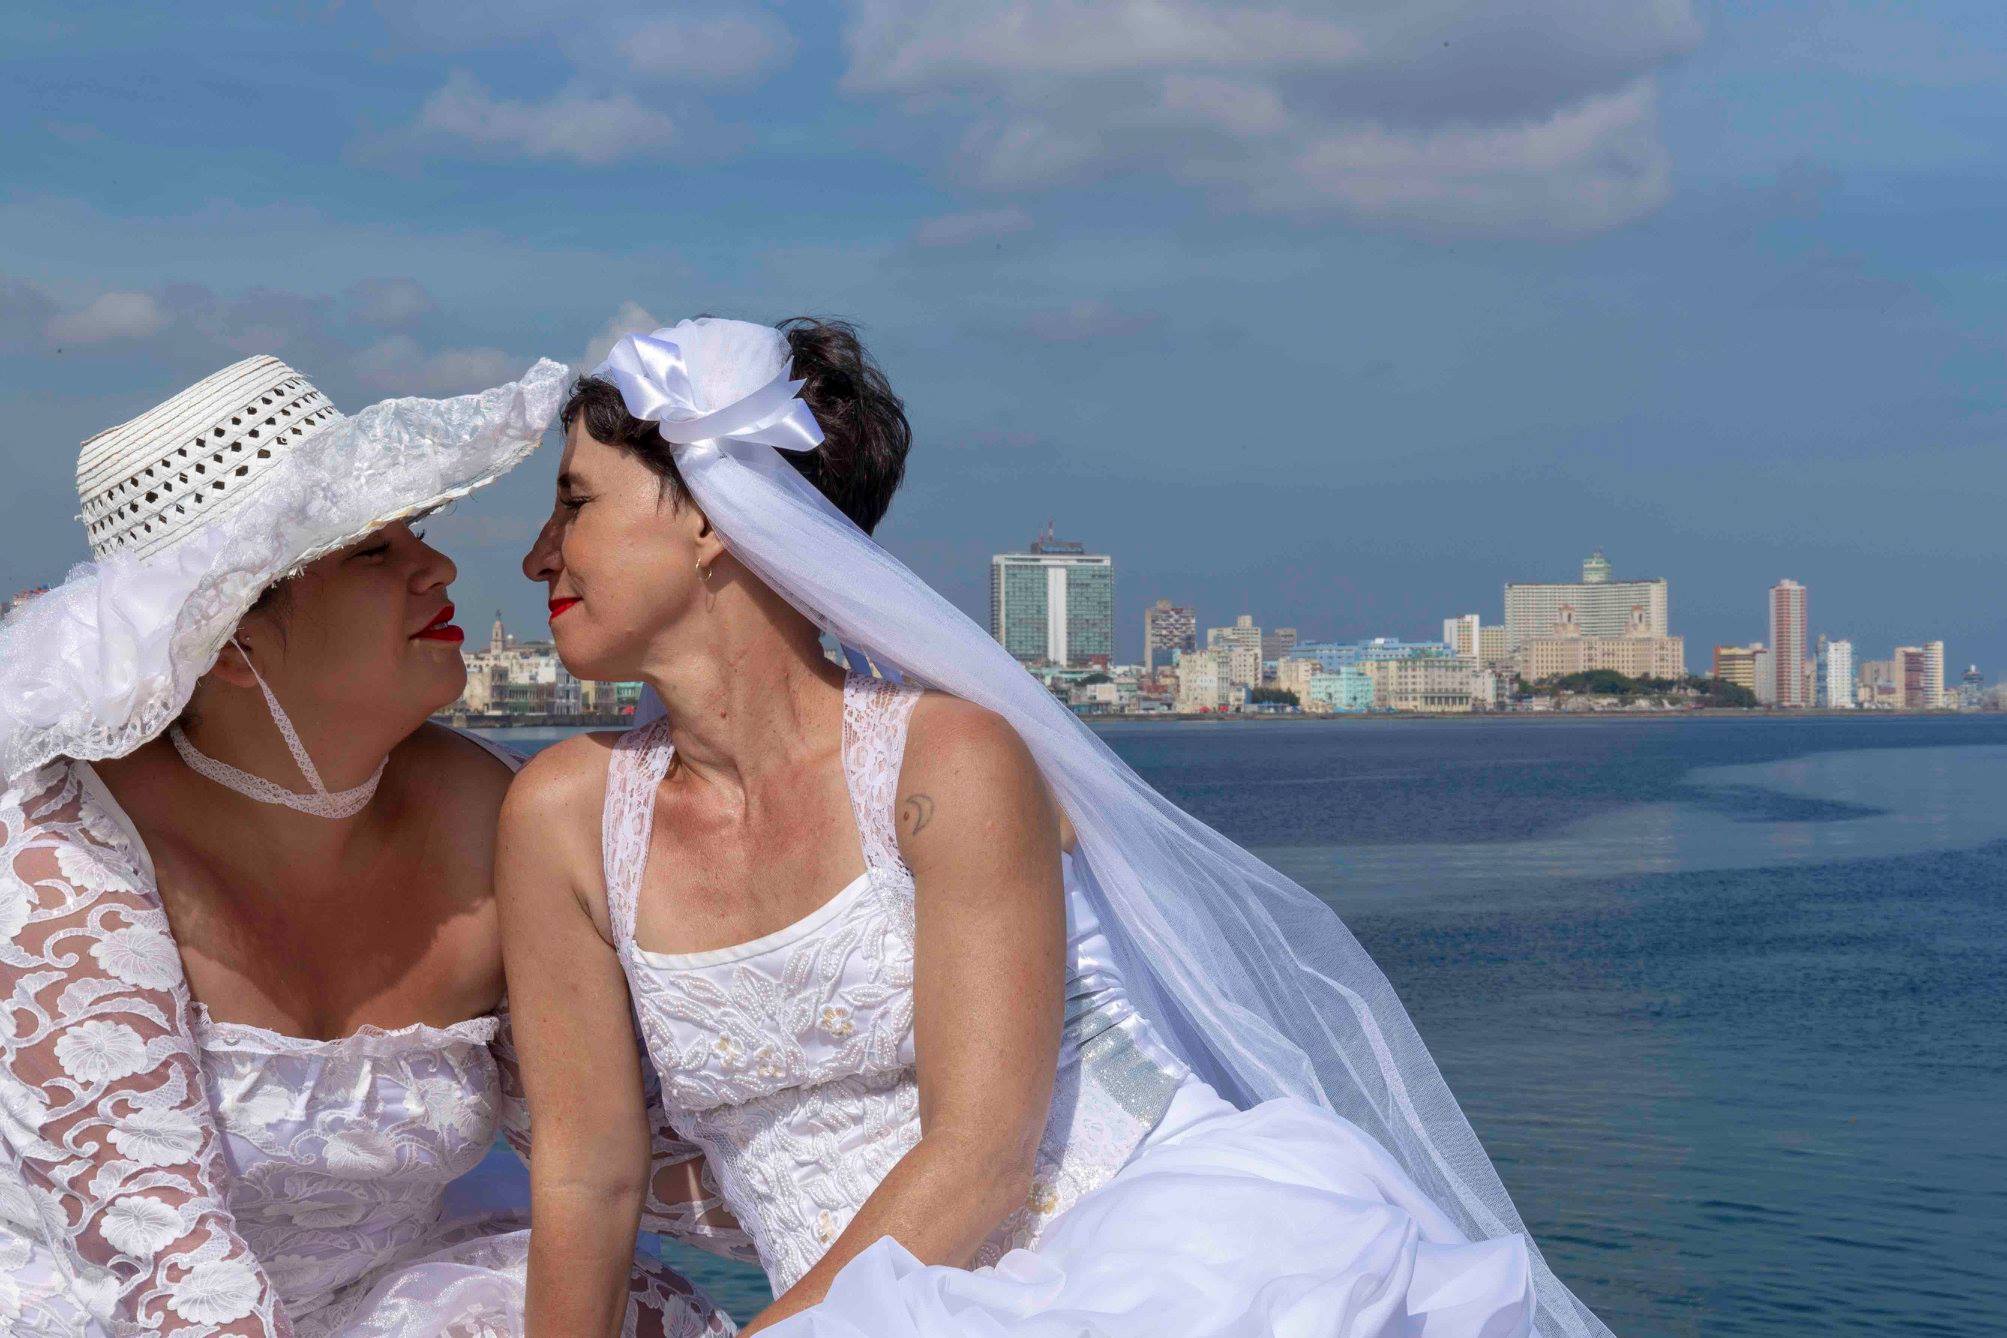 Iglesia Católica de Cuba condena nuevamente el matrimonio entre personas del mismo sexo, comparándolo con la esclavitud